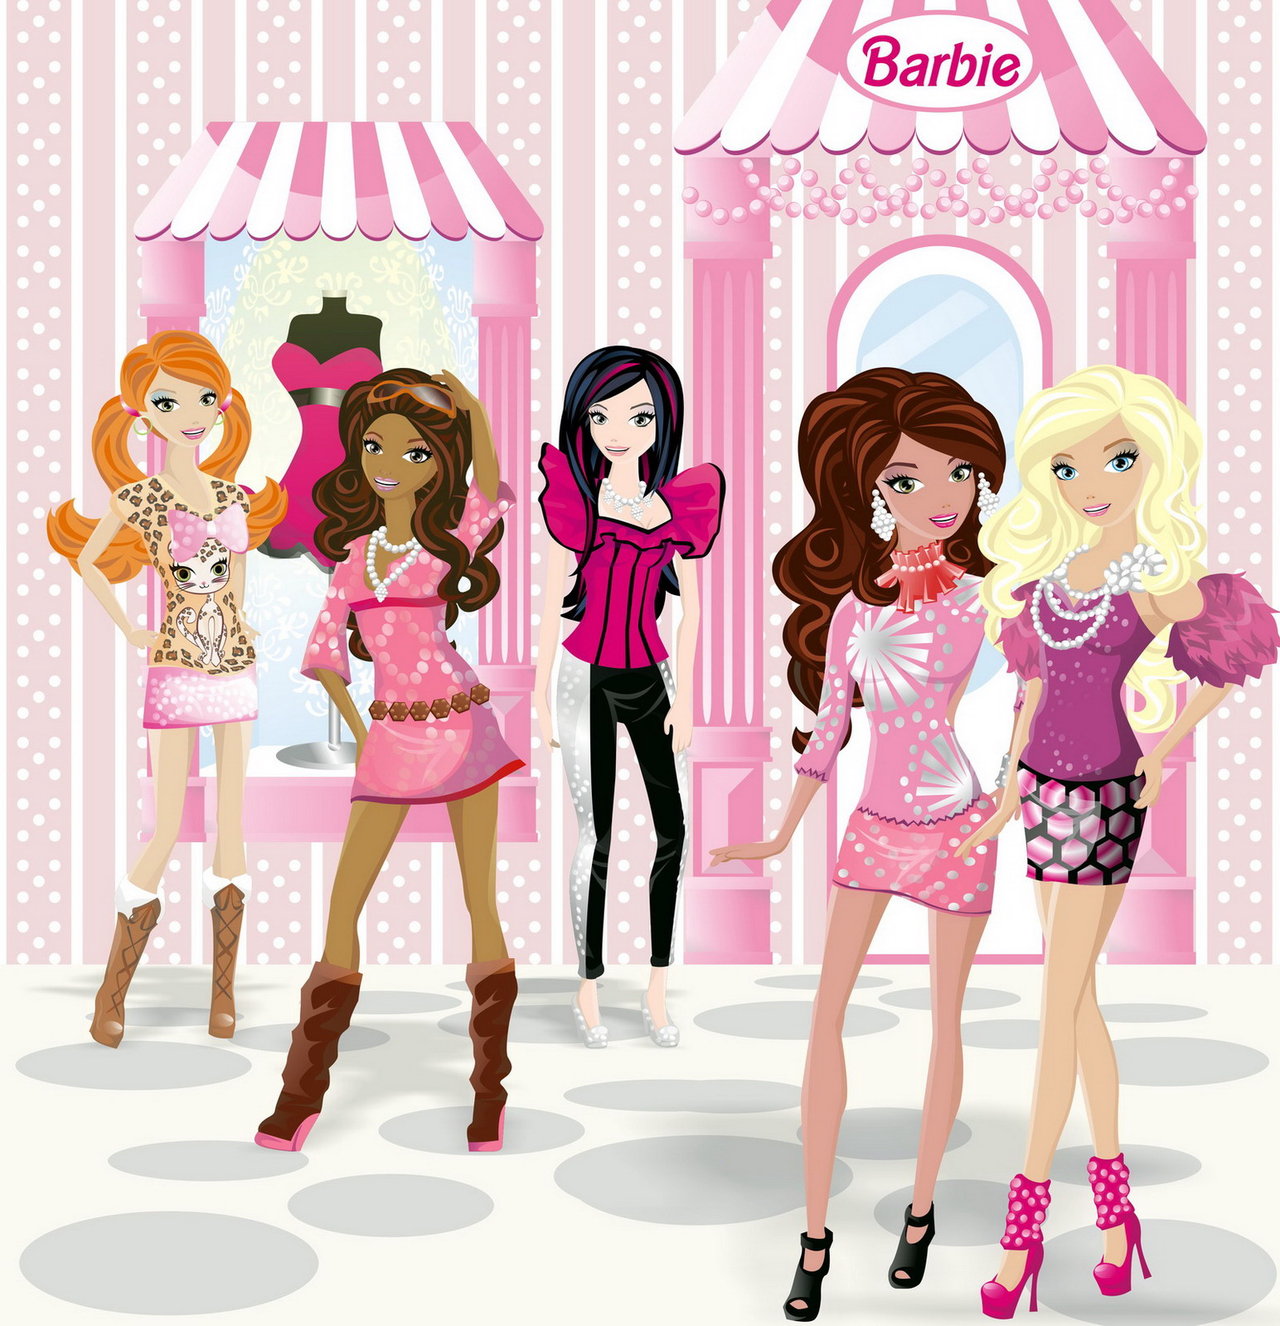 Barbie Fashionistas By Arrykazone